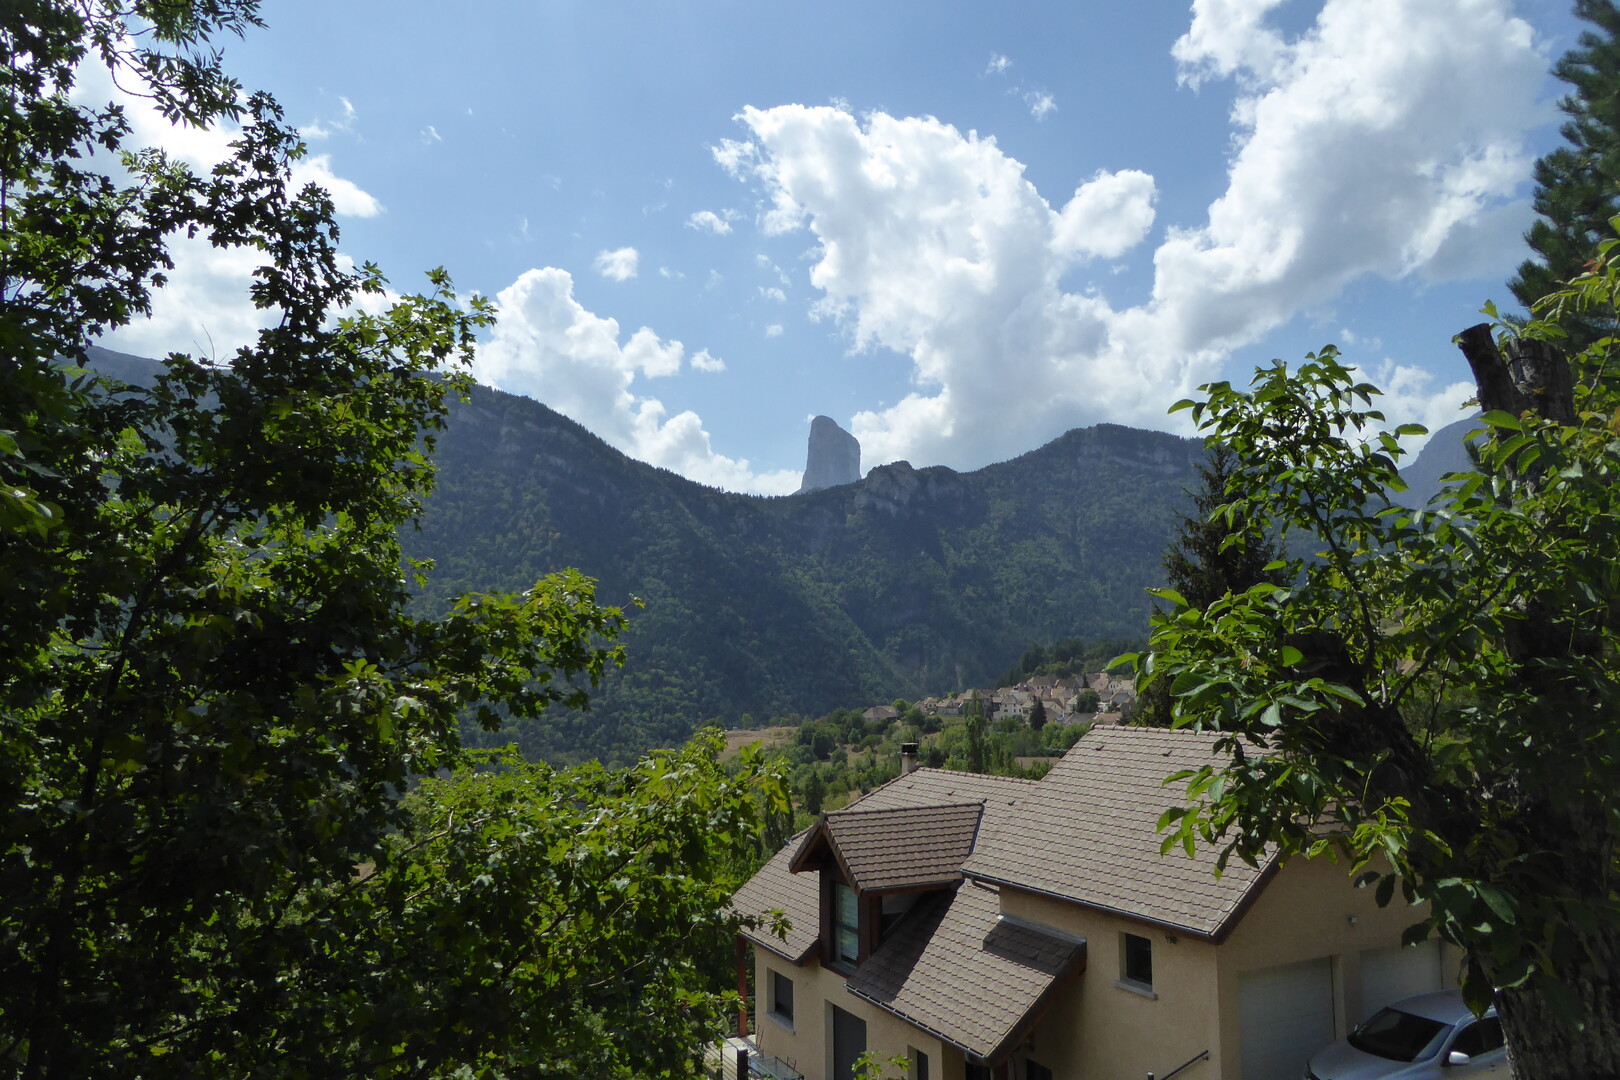 Mont Aiguille - jetzt ist klar warum der "Nadel" heisst